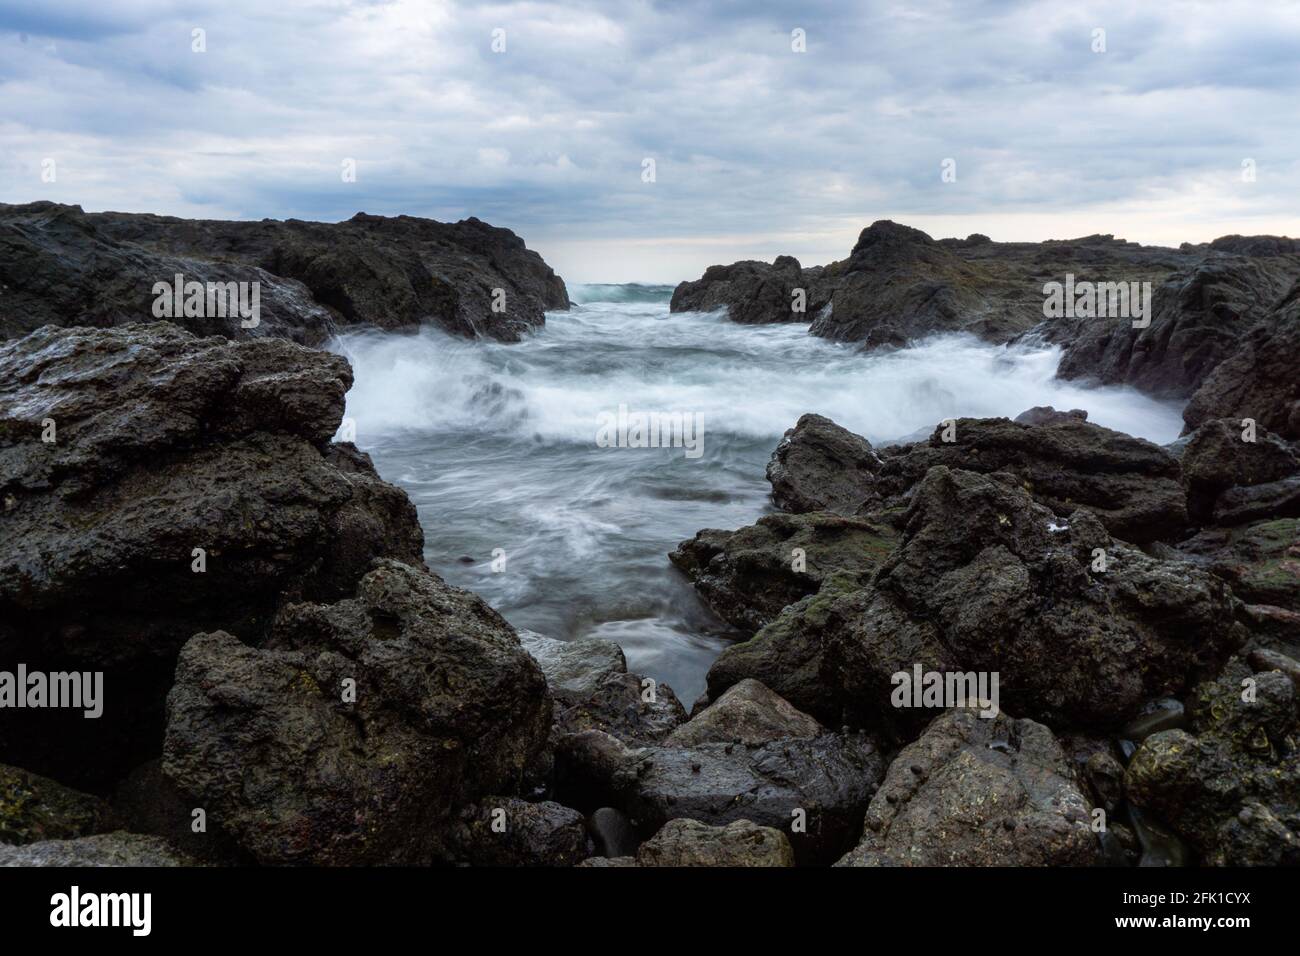 PANAMA, PANAMA - Apr 25, 2021: sunset of a rocky beach shore Stock Photo